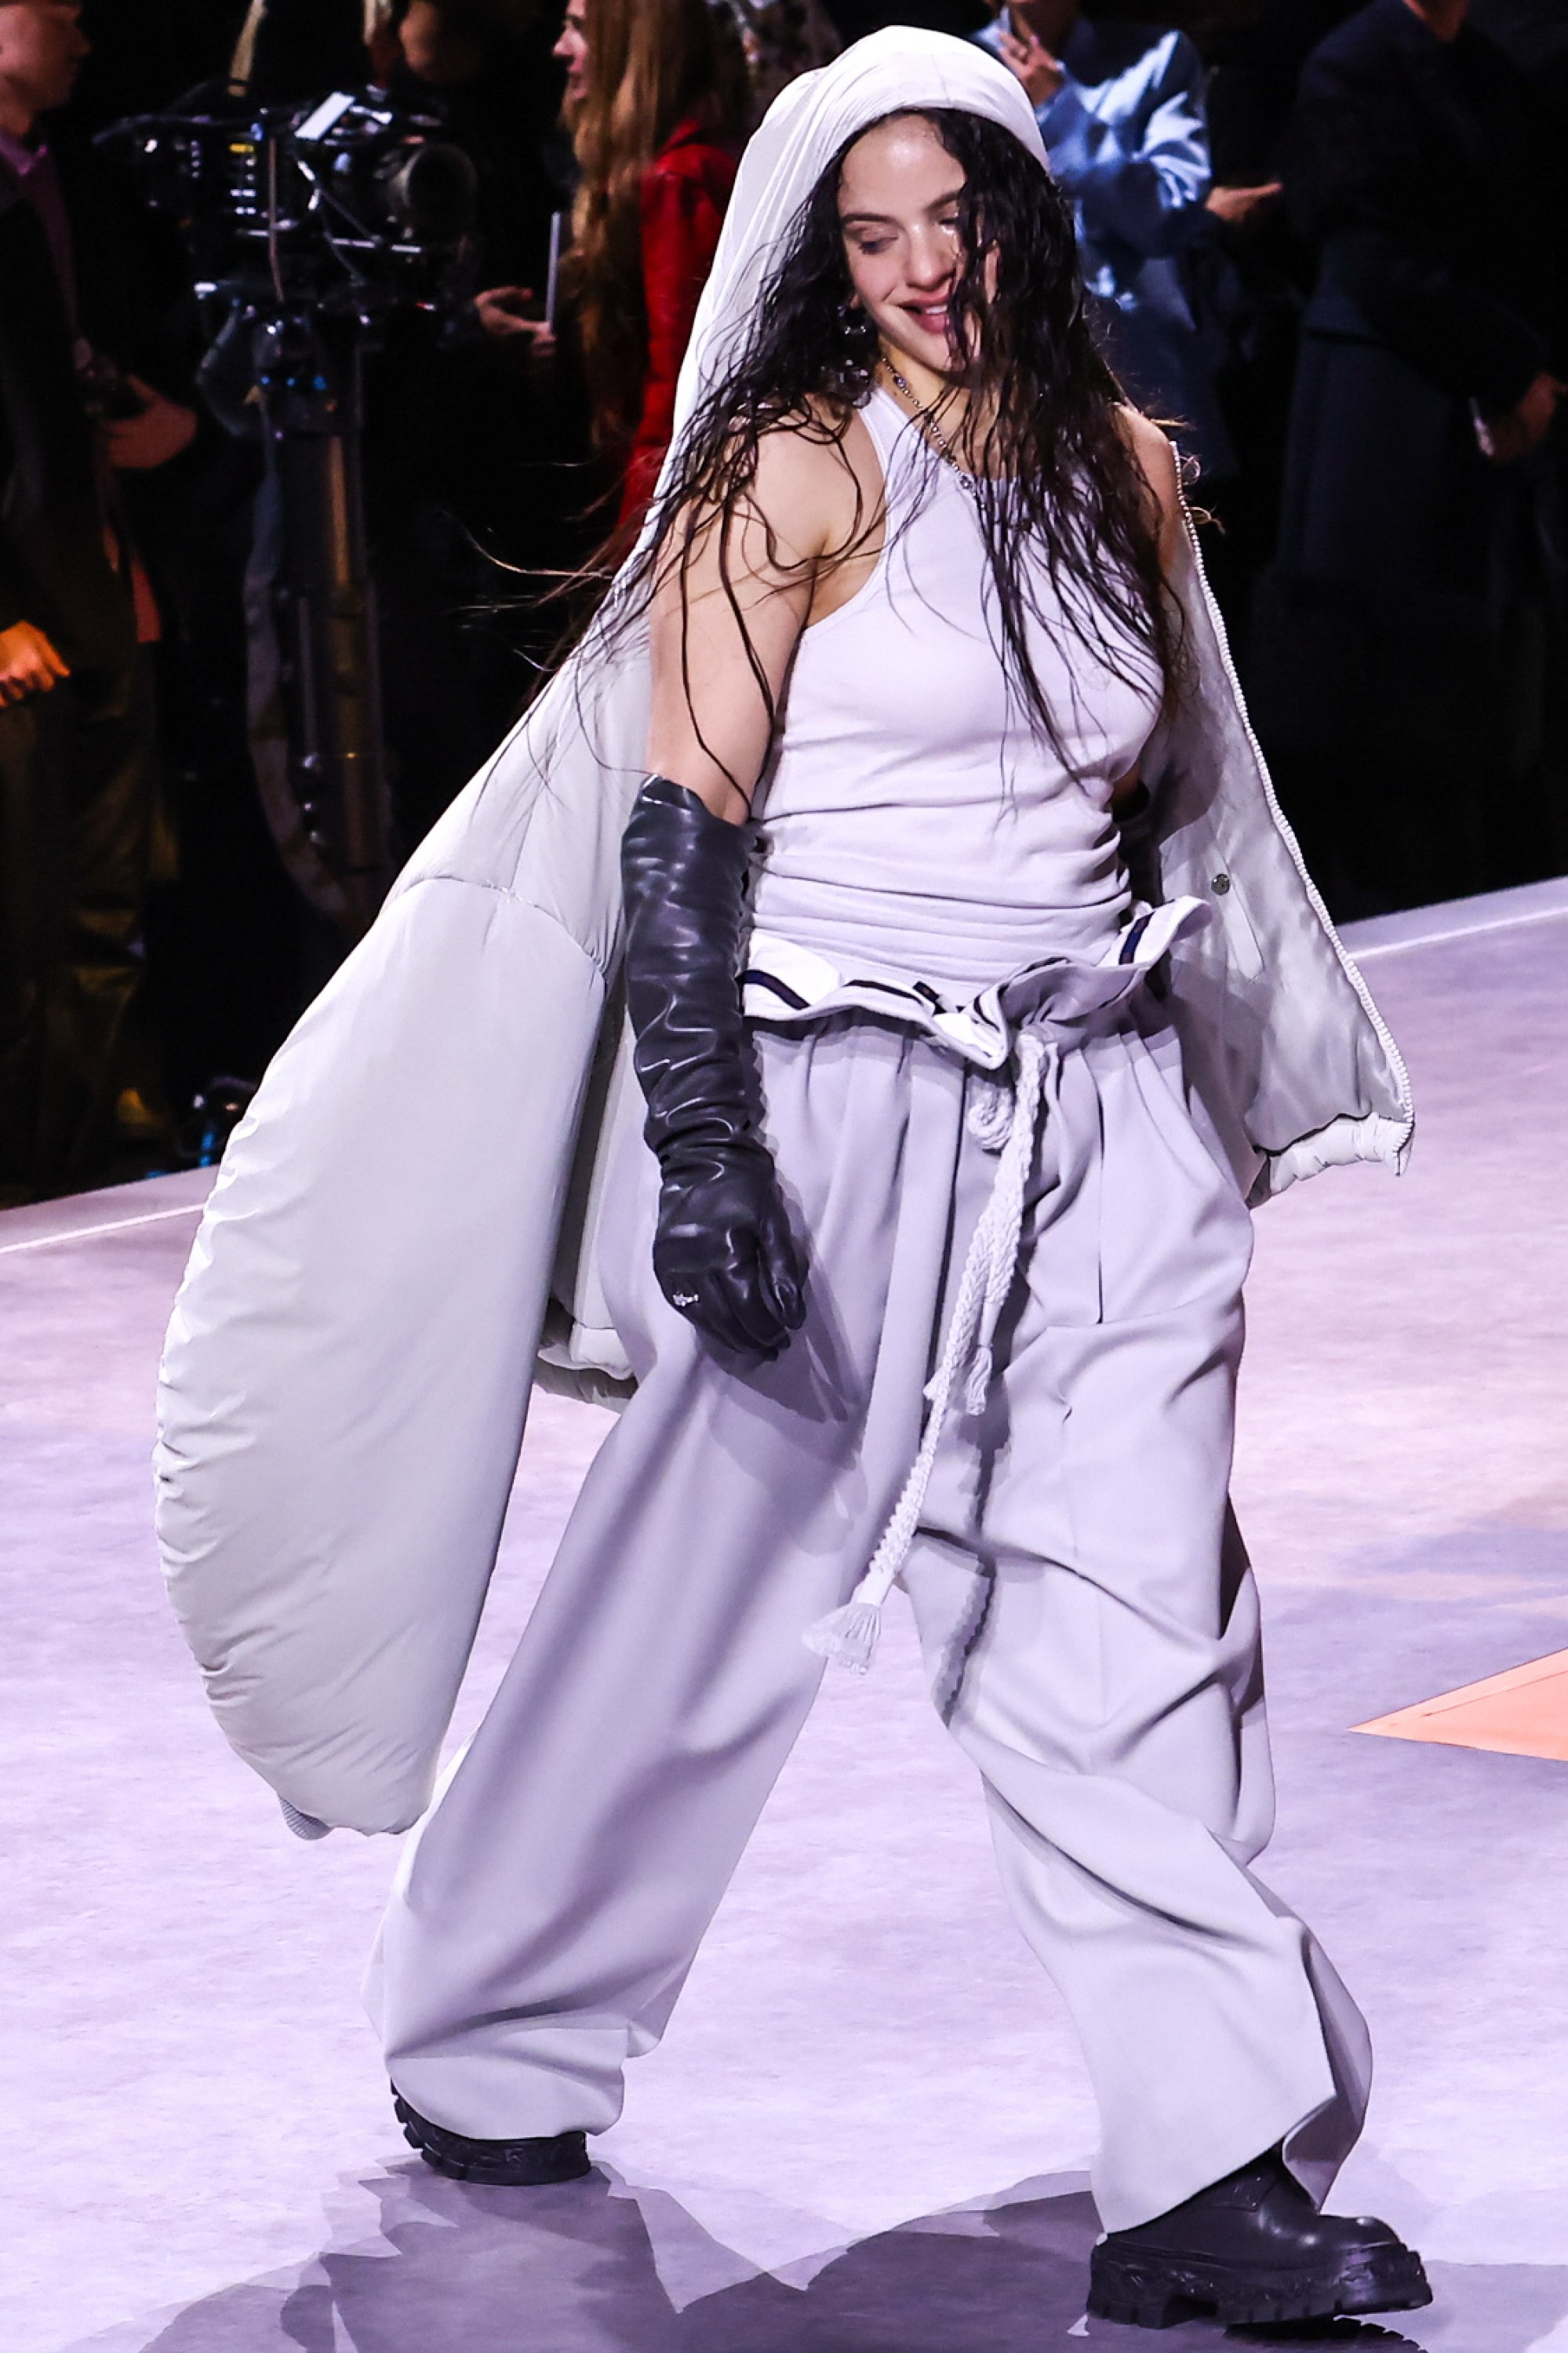 louis vuitton: Paris Fashion Show: Singer Rosalia performs at launch